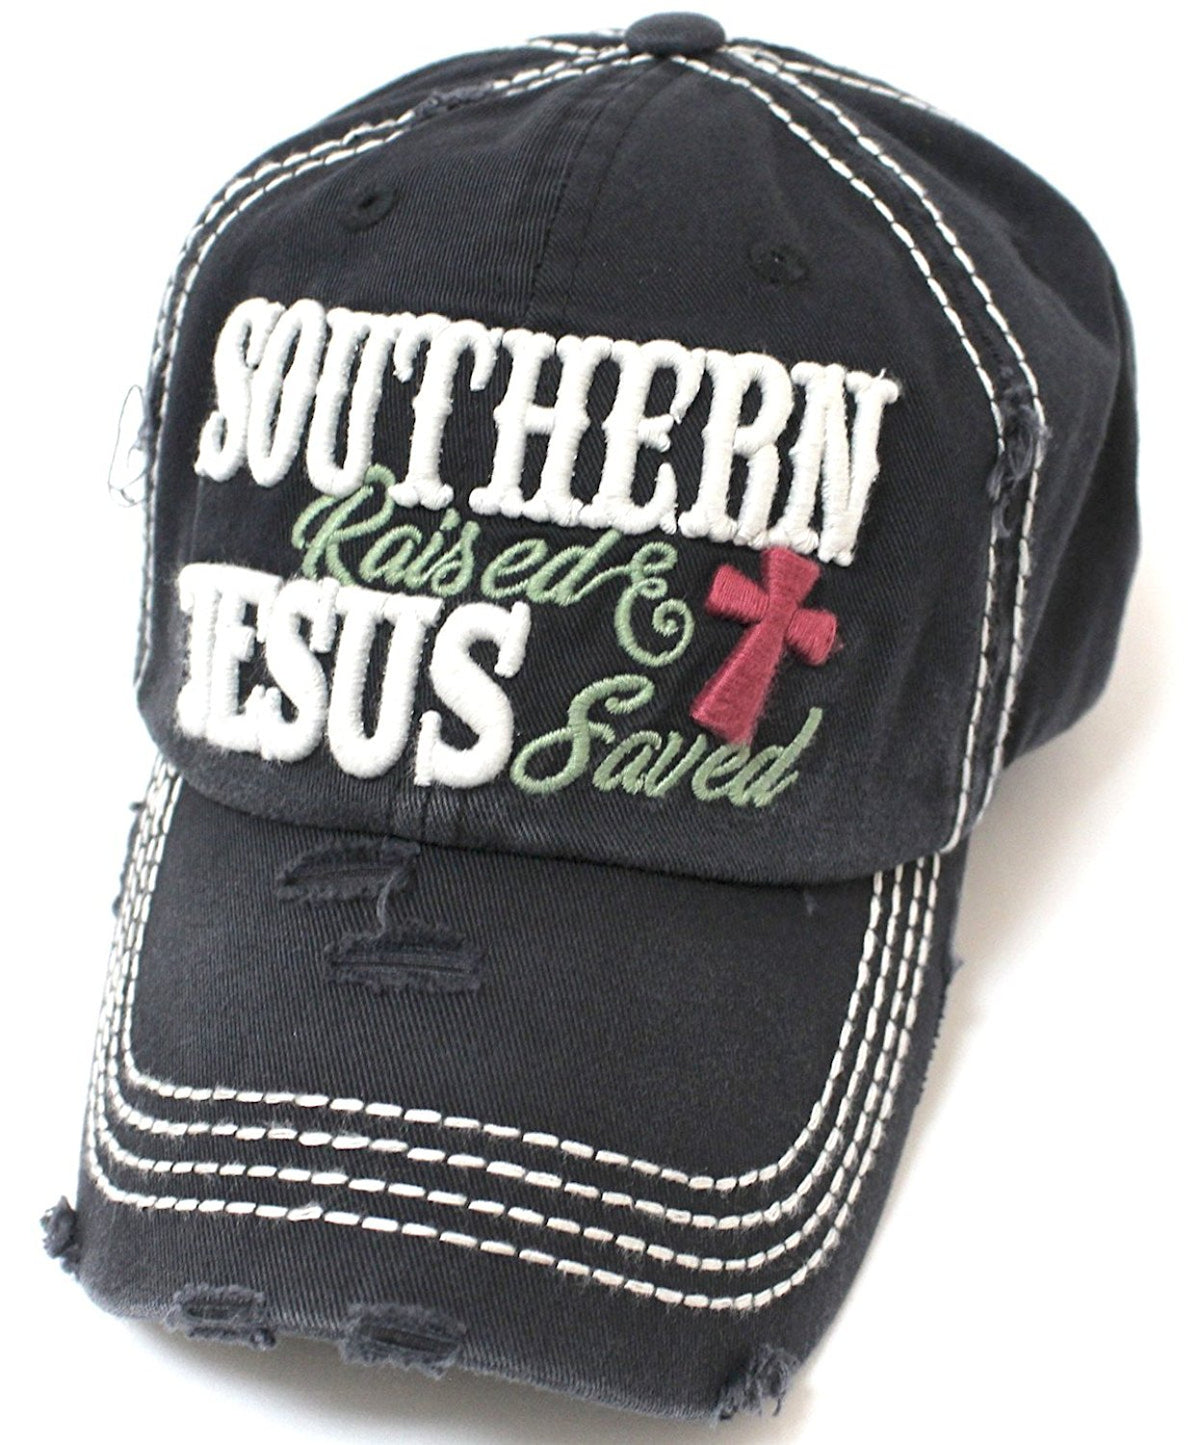 CAPS 'N VINTAGE Black Southern Raised & Jesus Saved Cross Embroidery Hat - Caps 'N Vintage 